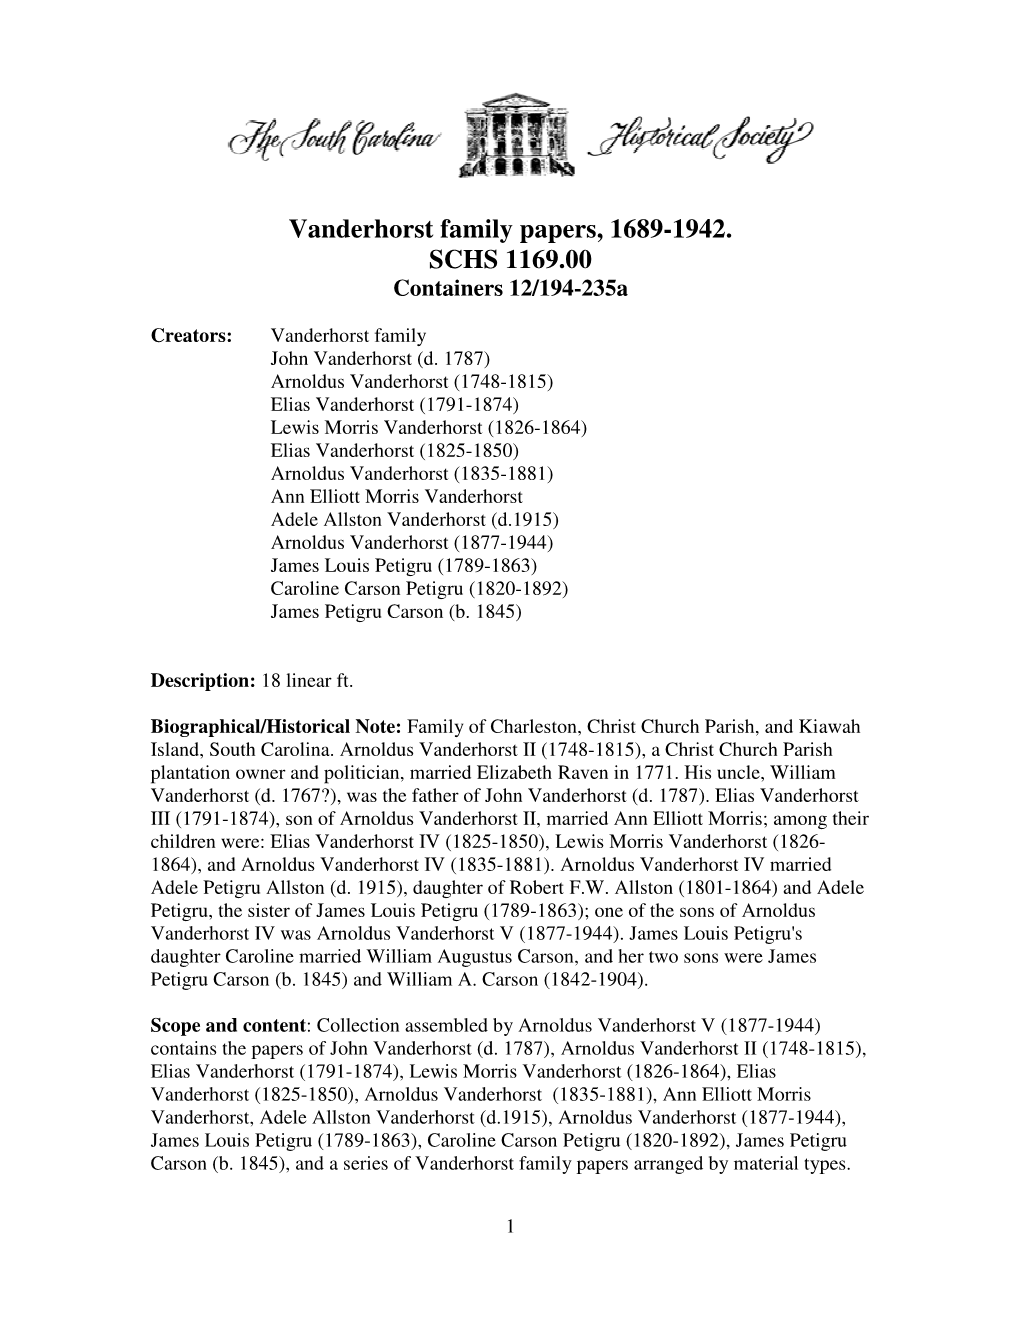 Vanderhorst Family Papers, 1689-1942